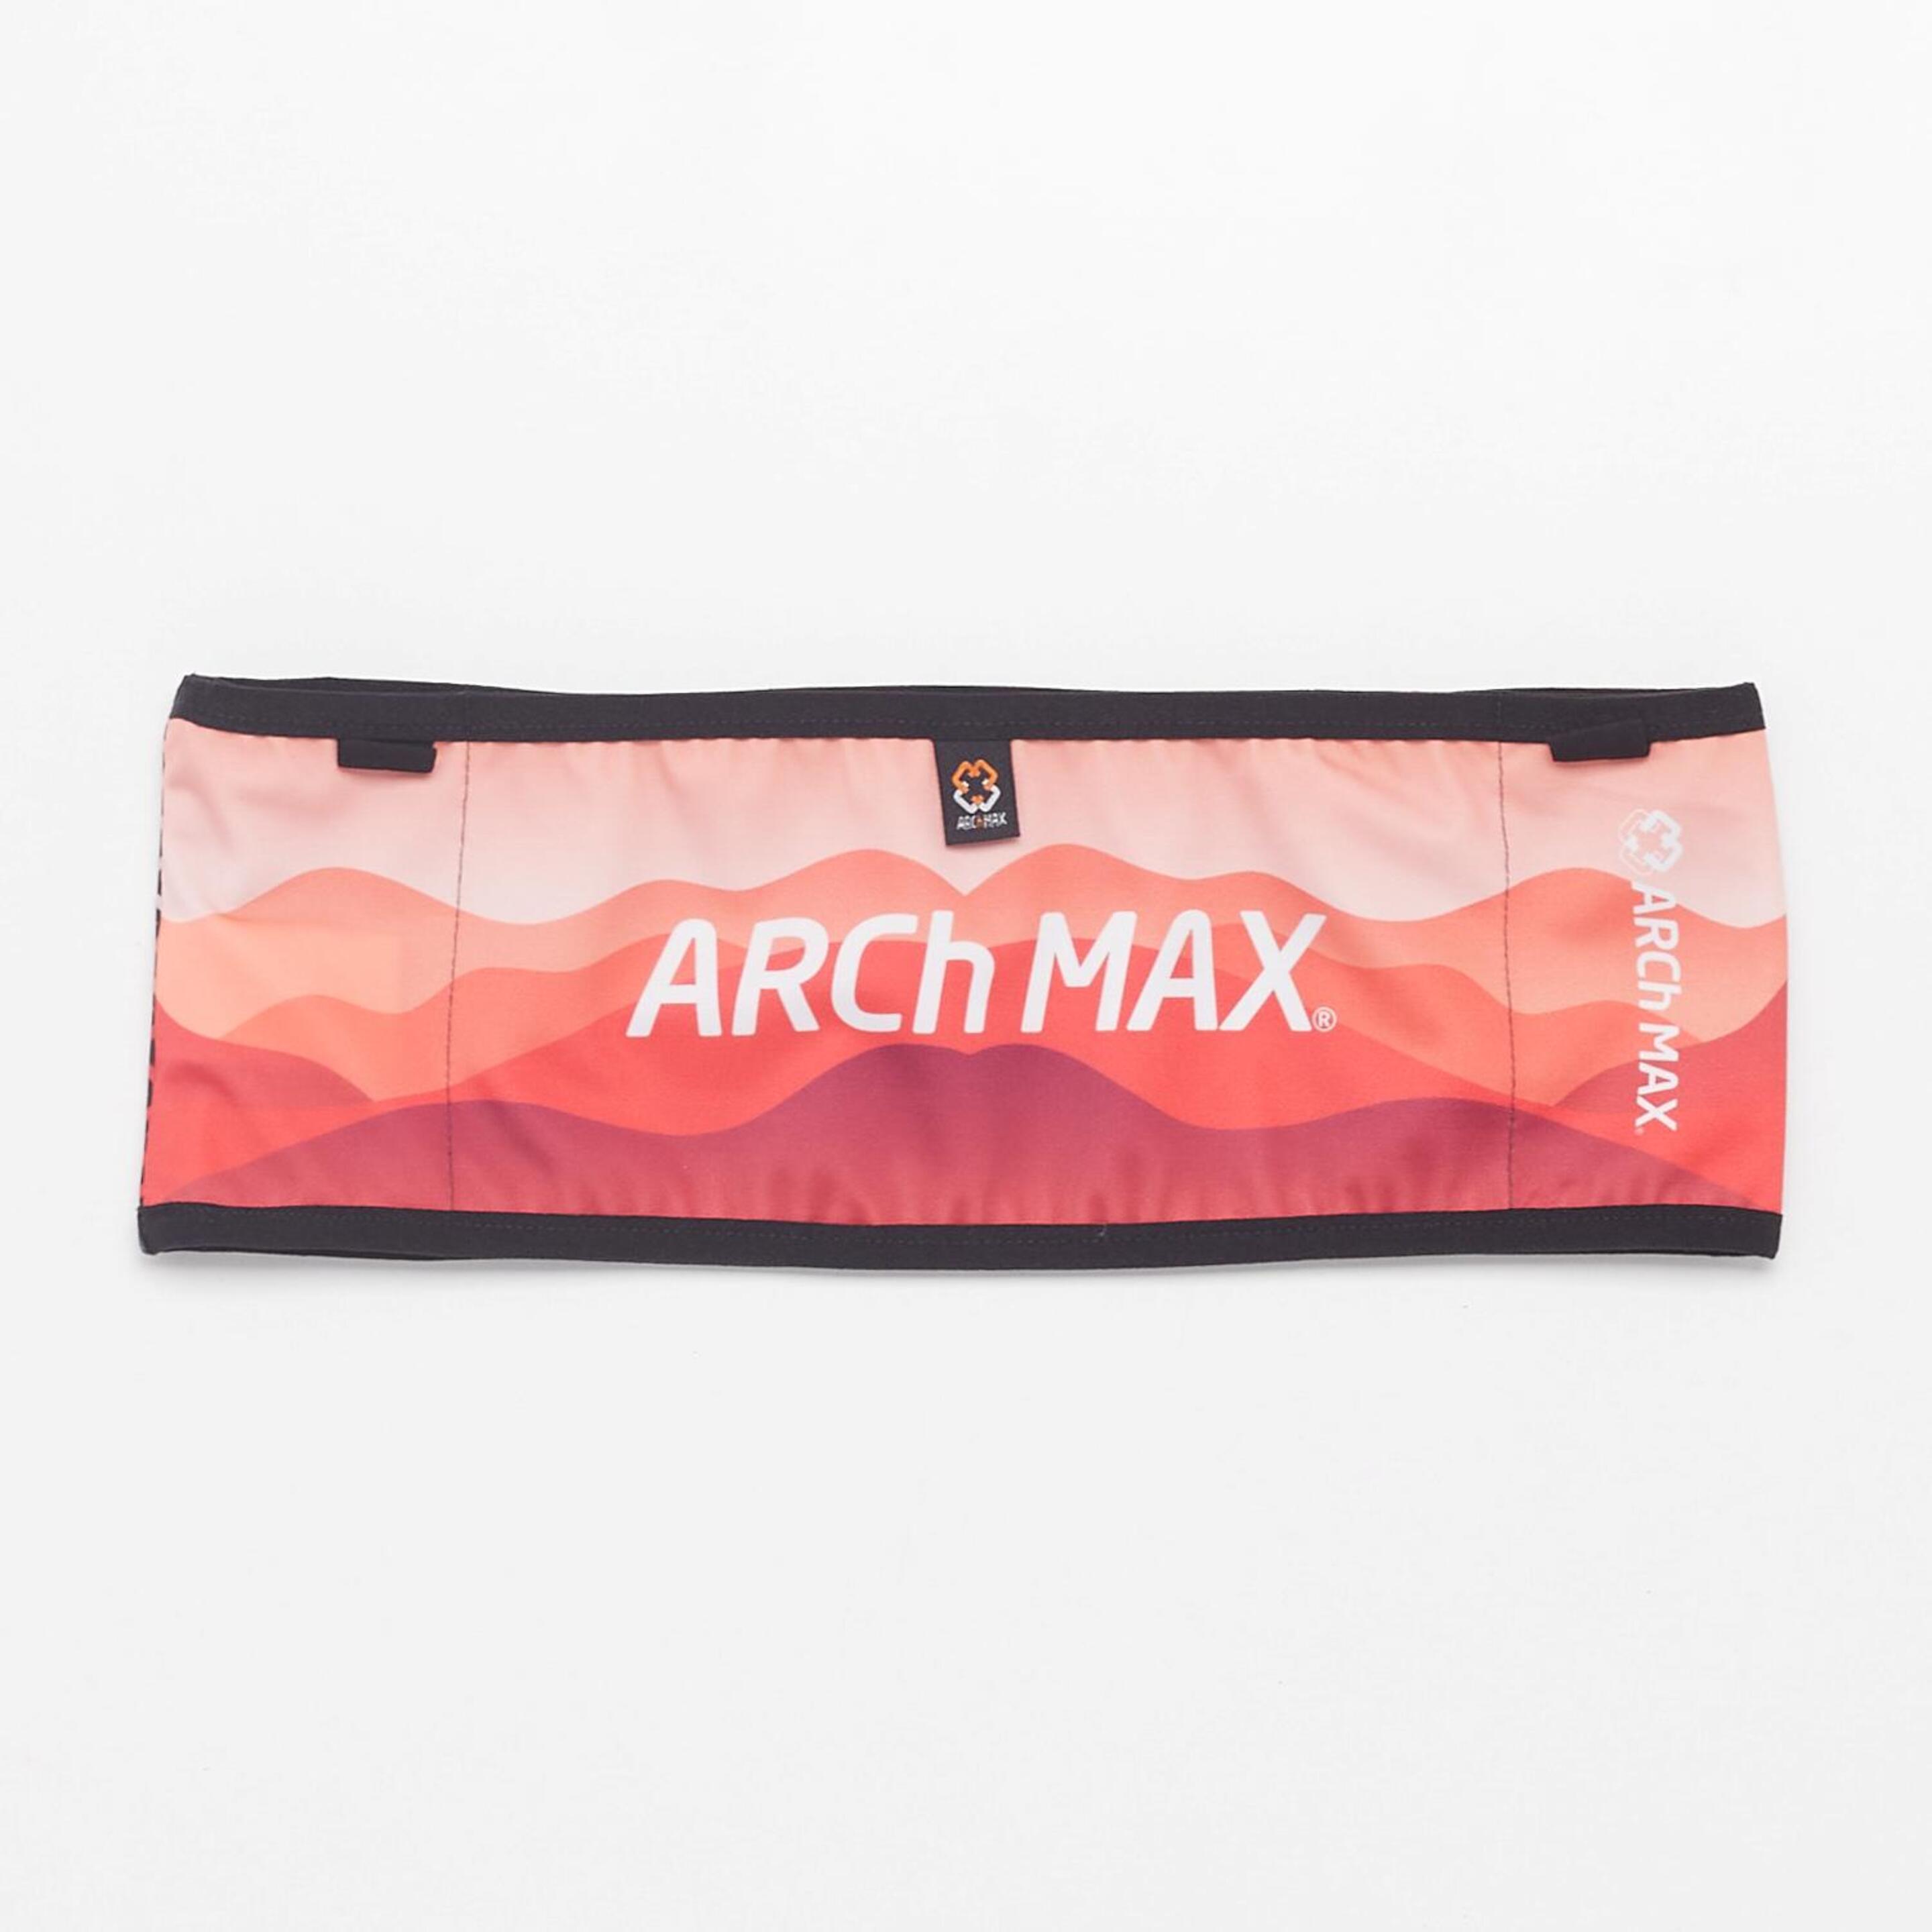 Arch Max Belt Pro Plus